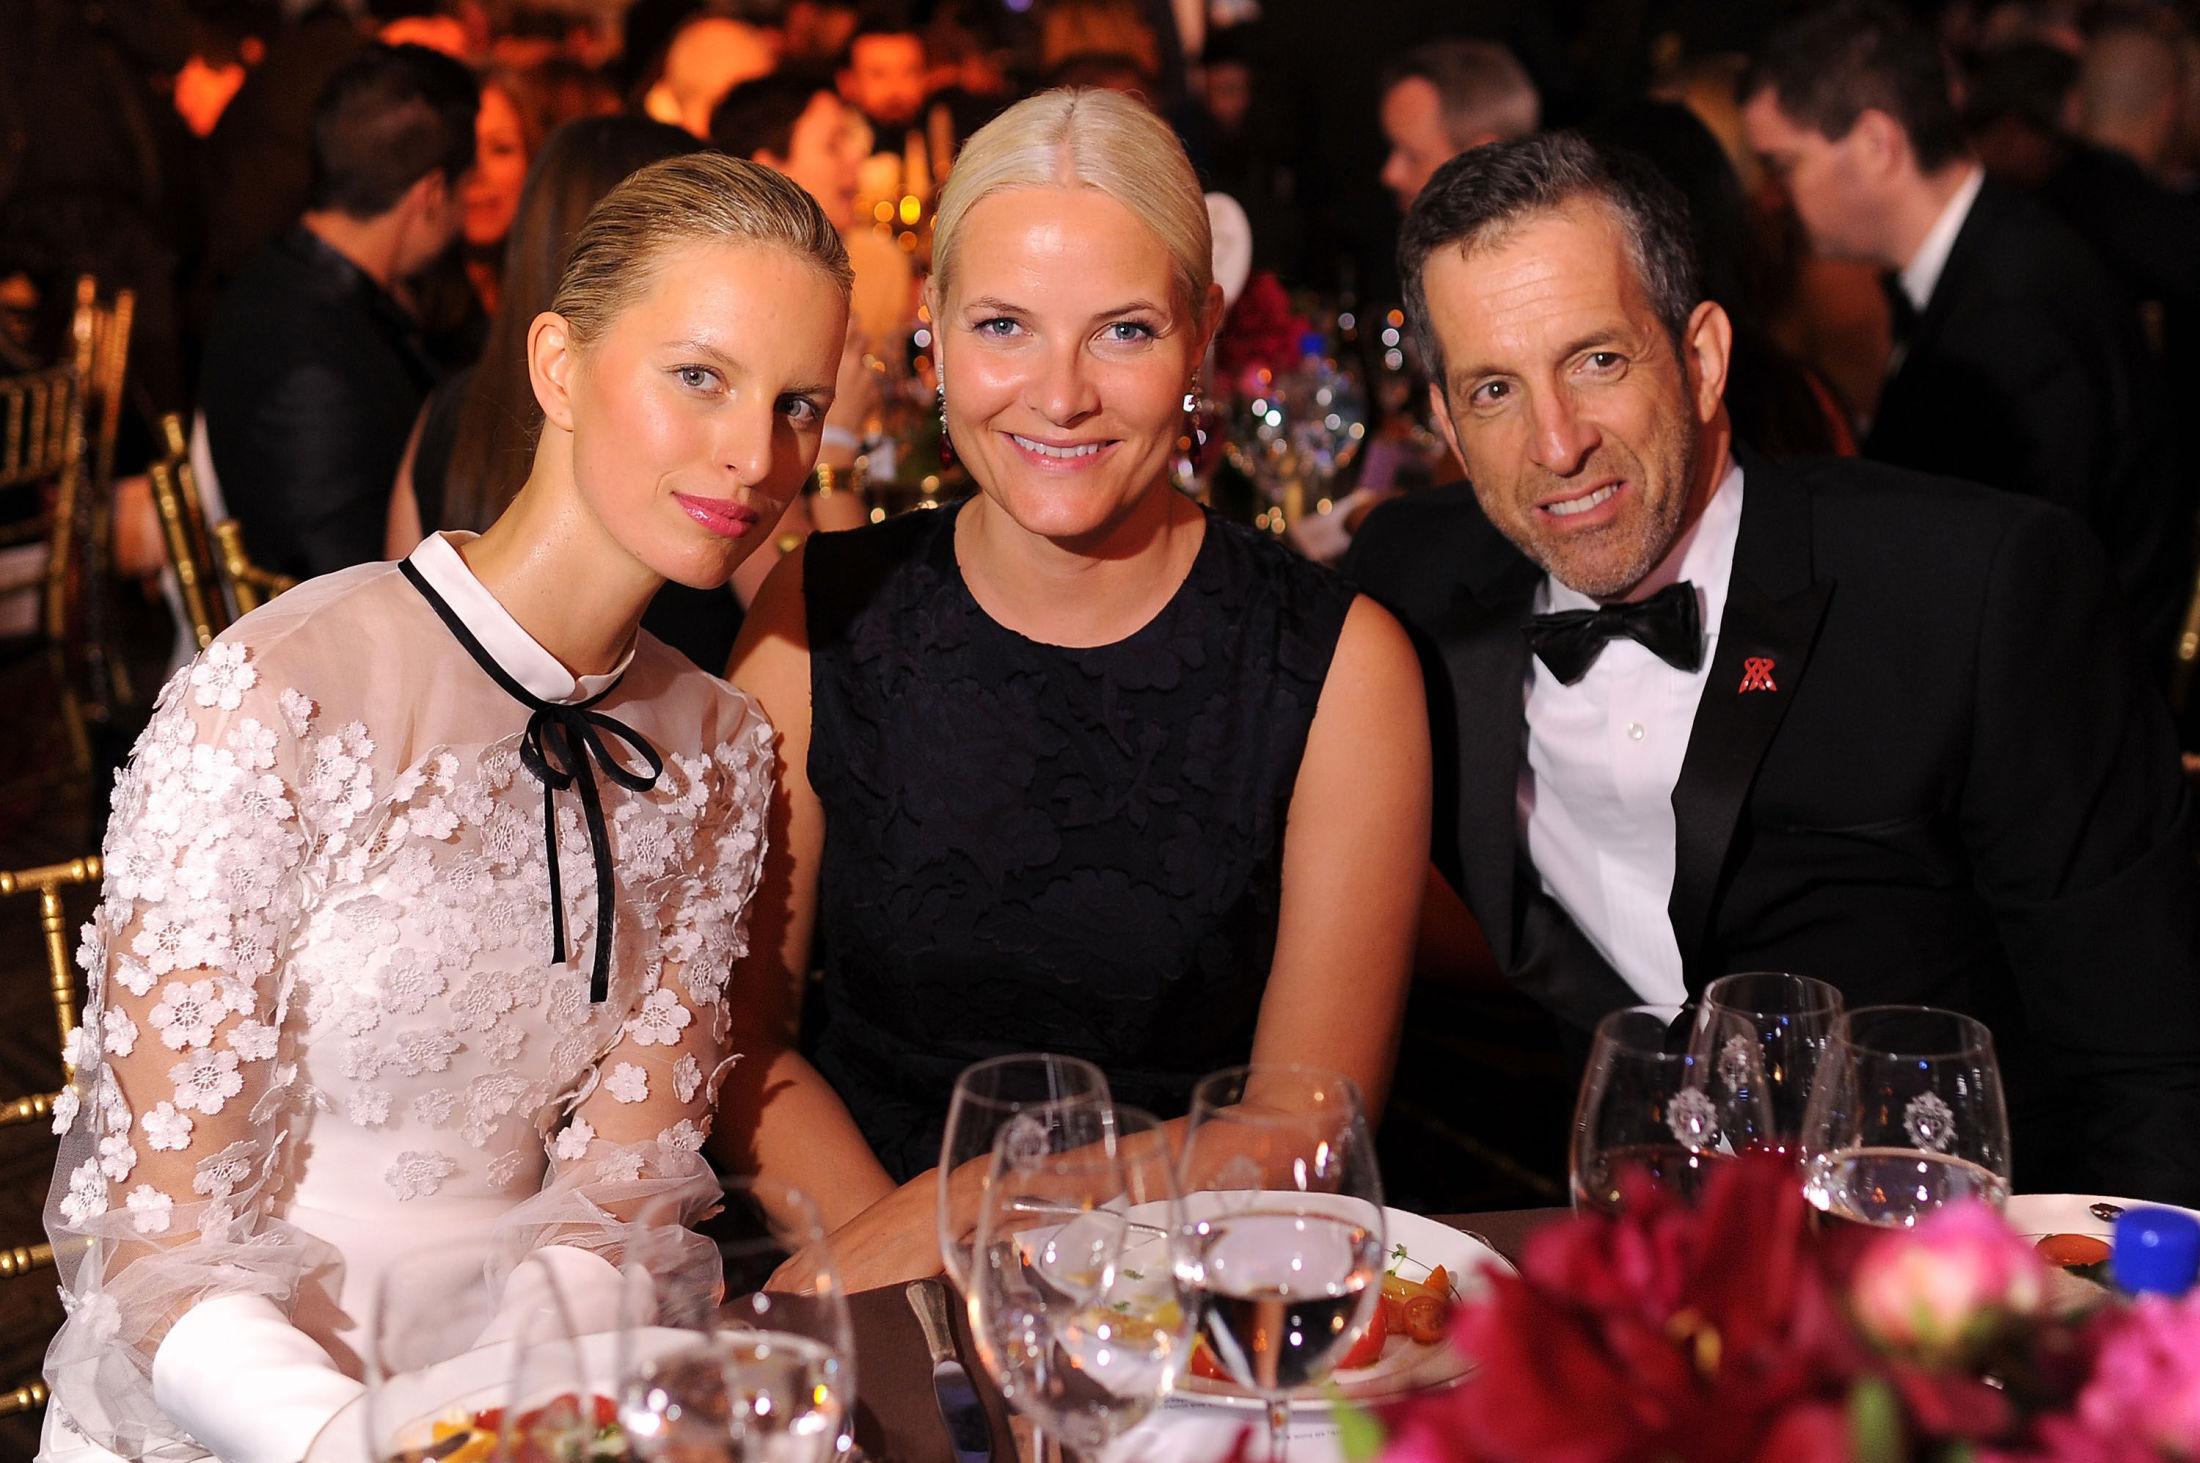 STJERNER TIL BORDS: Mette-Marit satt på bord sammen med blant annet supermodell Karolina Kurkova og designer Kenneth Cole på amfAR-gallen i natt. Foto: AFP